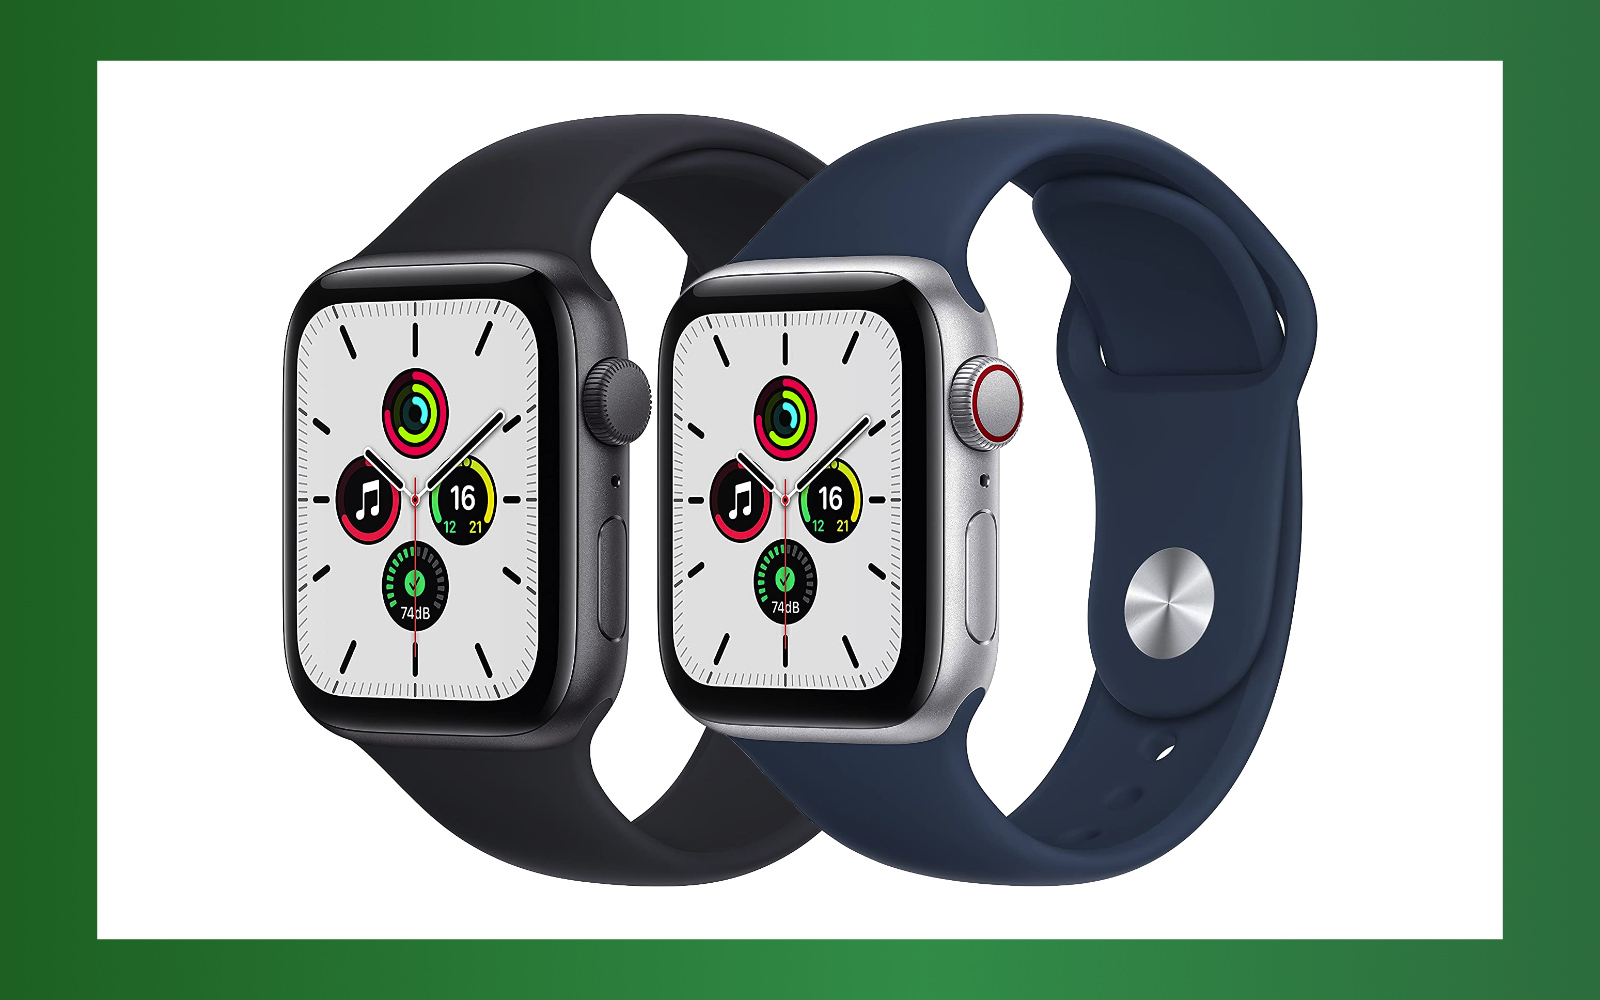 Apple Watch SE is on sale